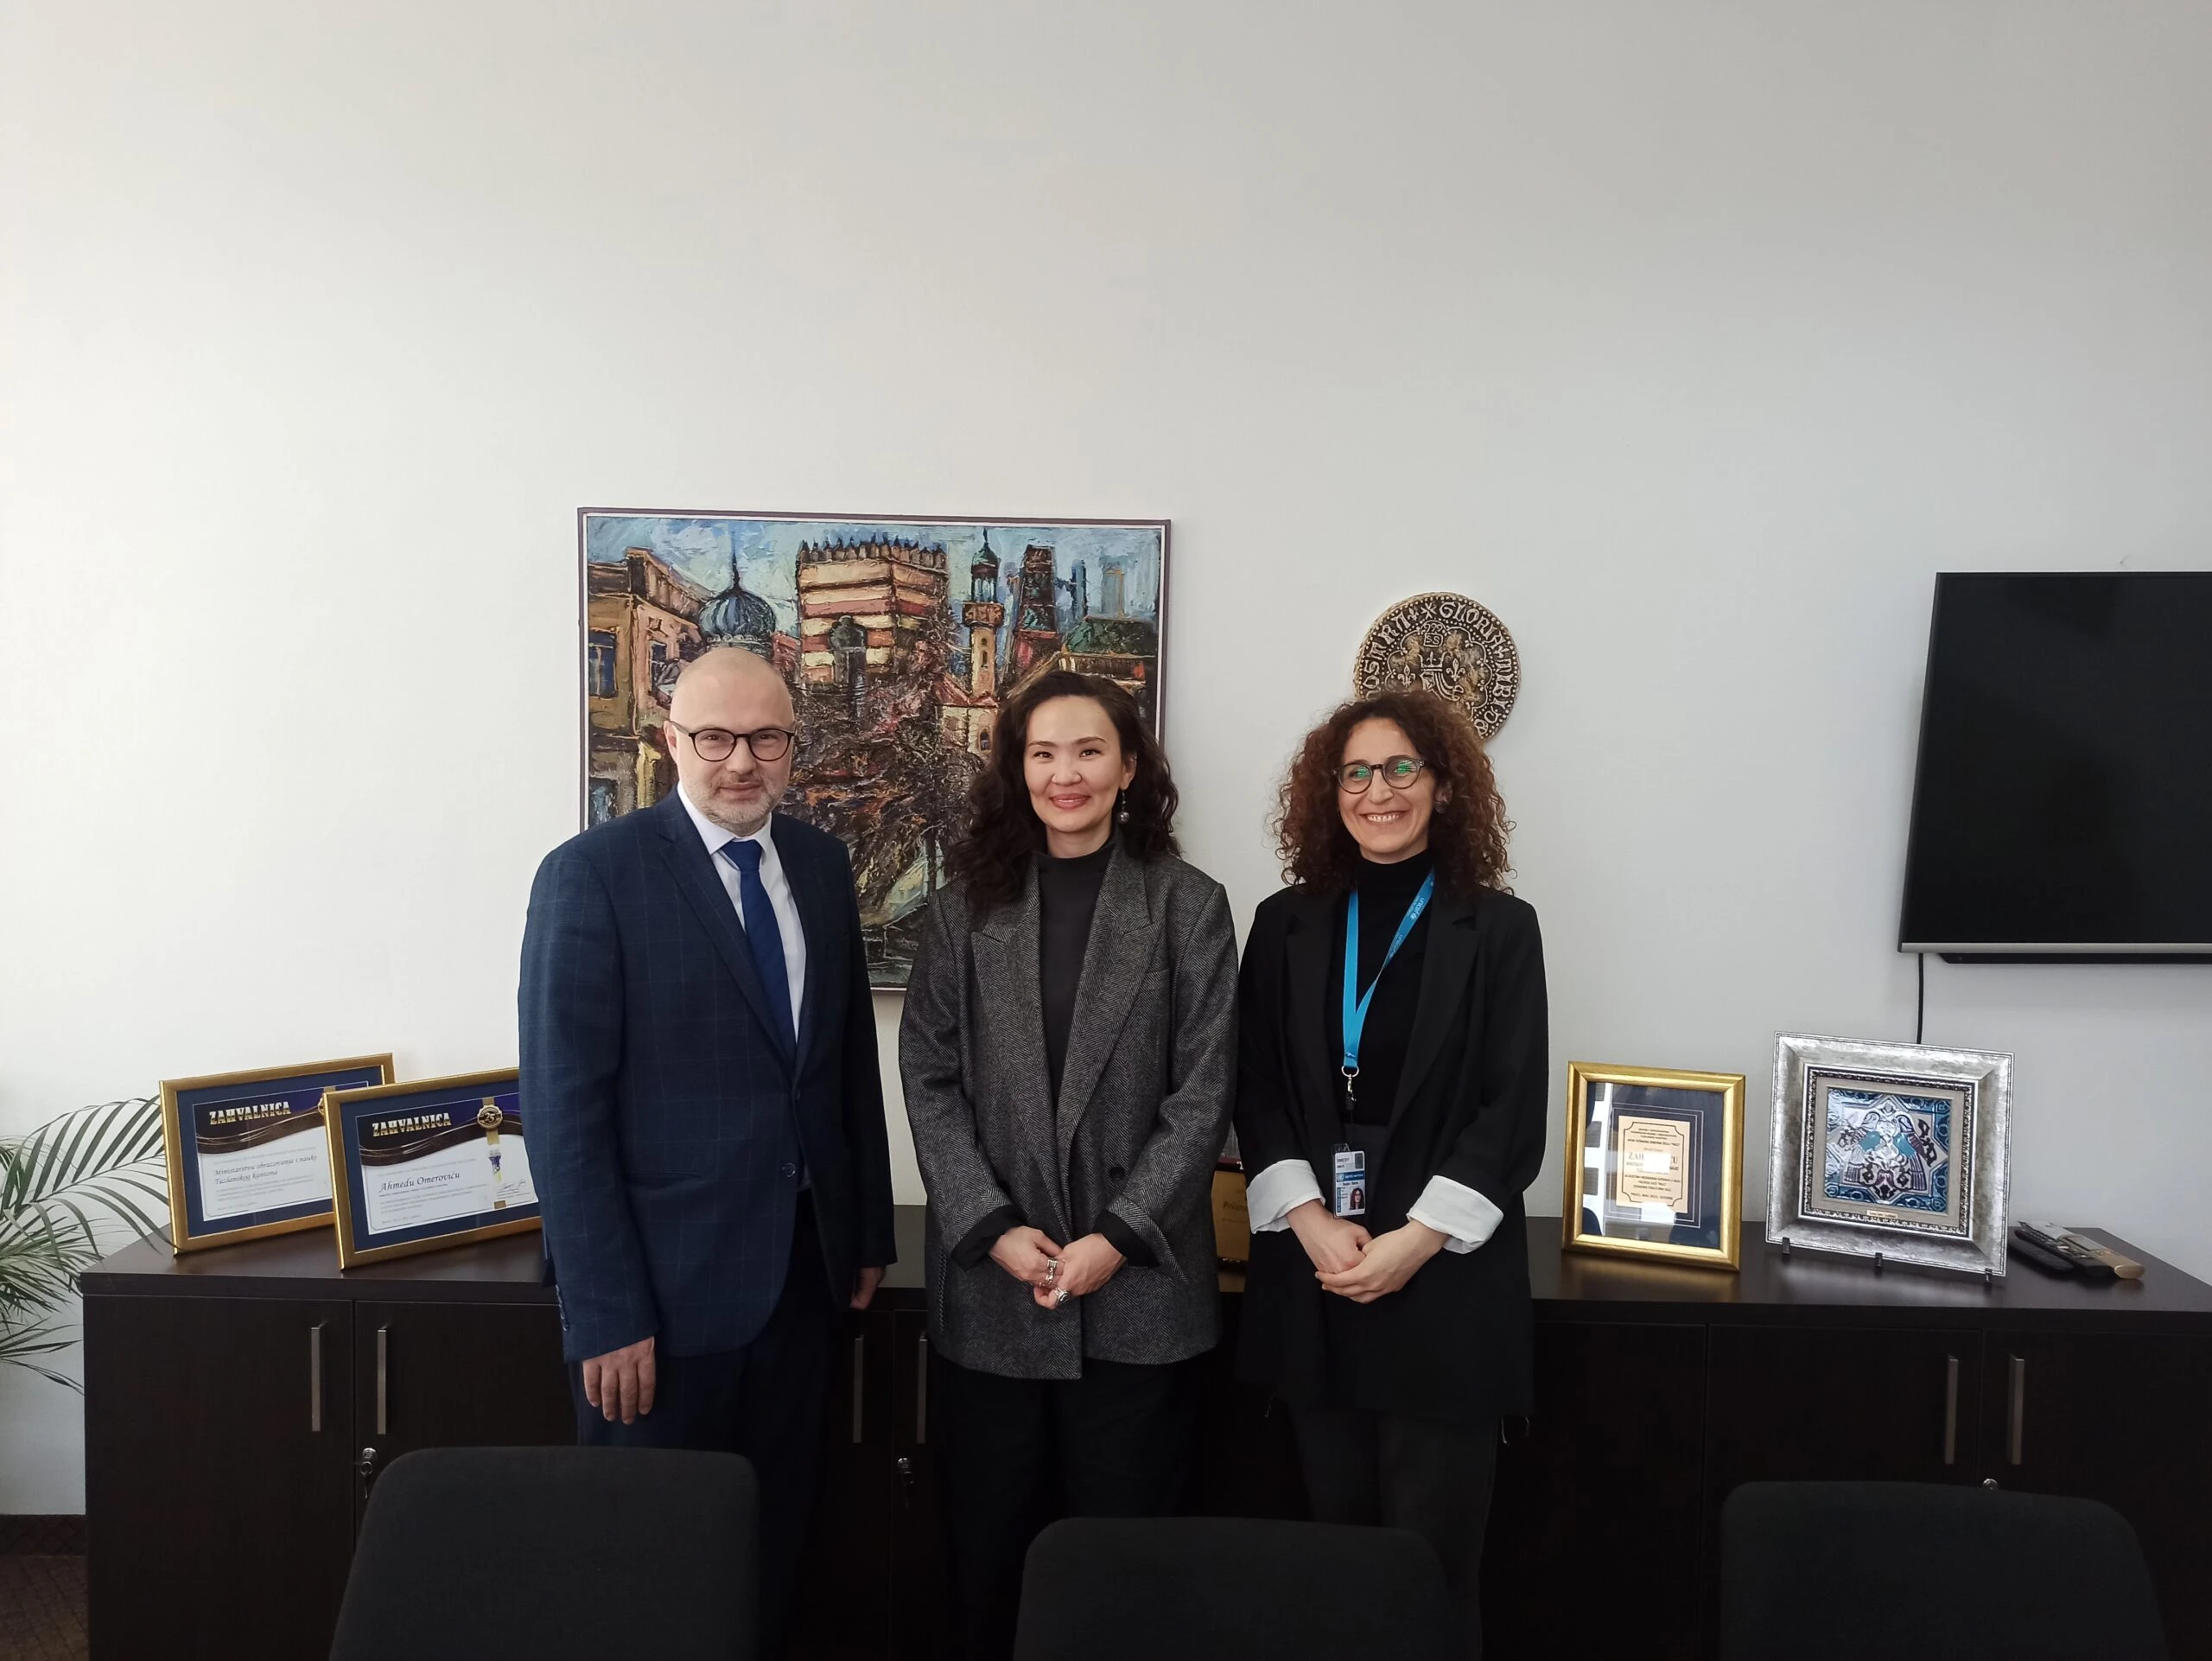 O razvoju digitalizacije obrazovanja ministar Omerović razgovarao sa predstavnicama UNICEF-a